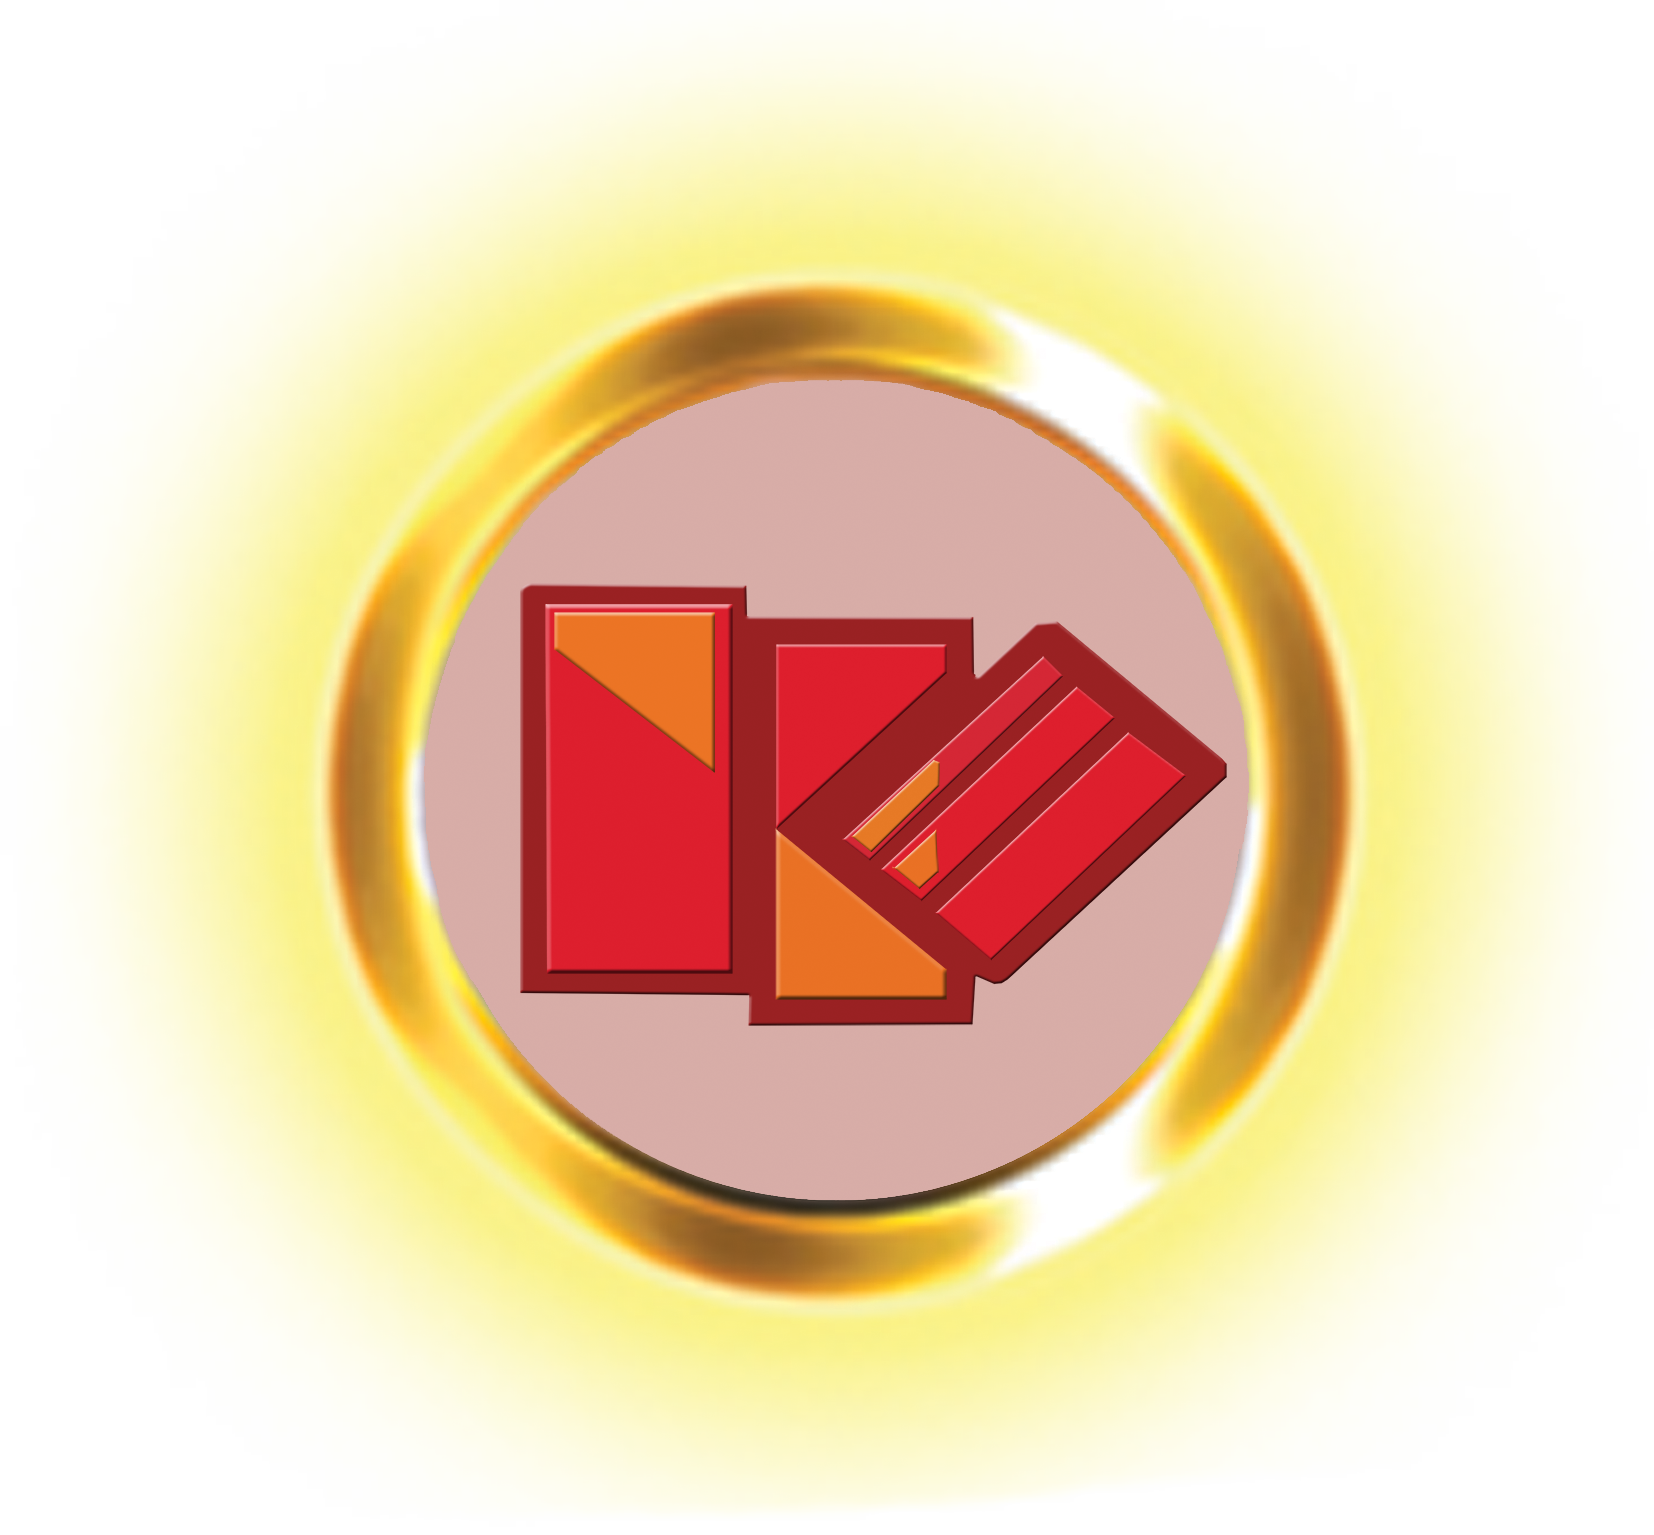 khazar-logo